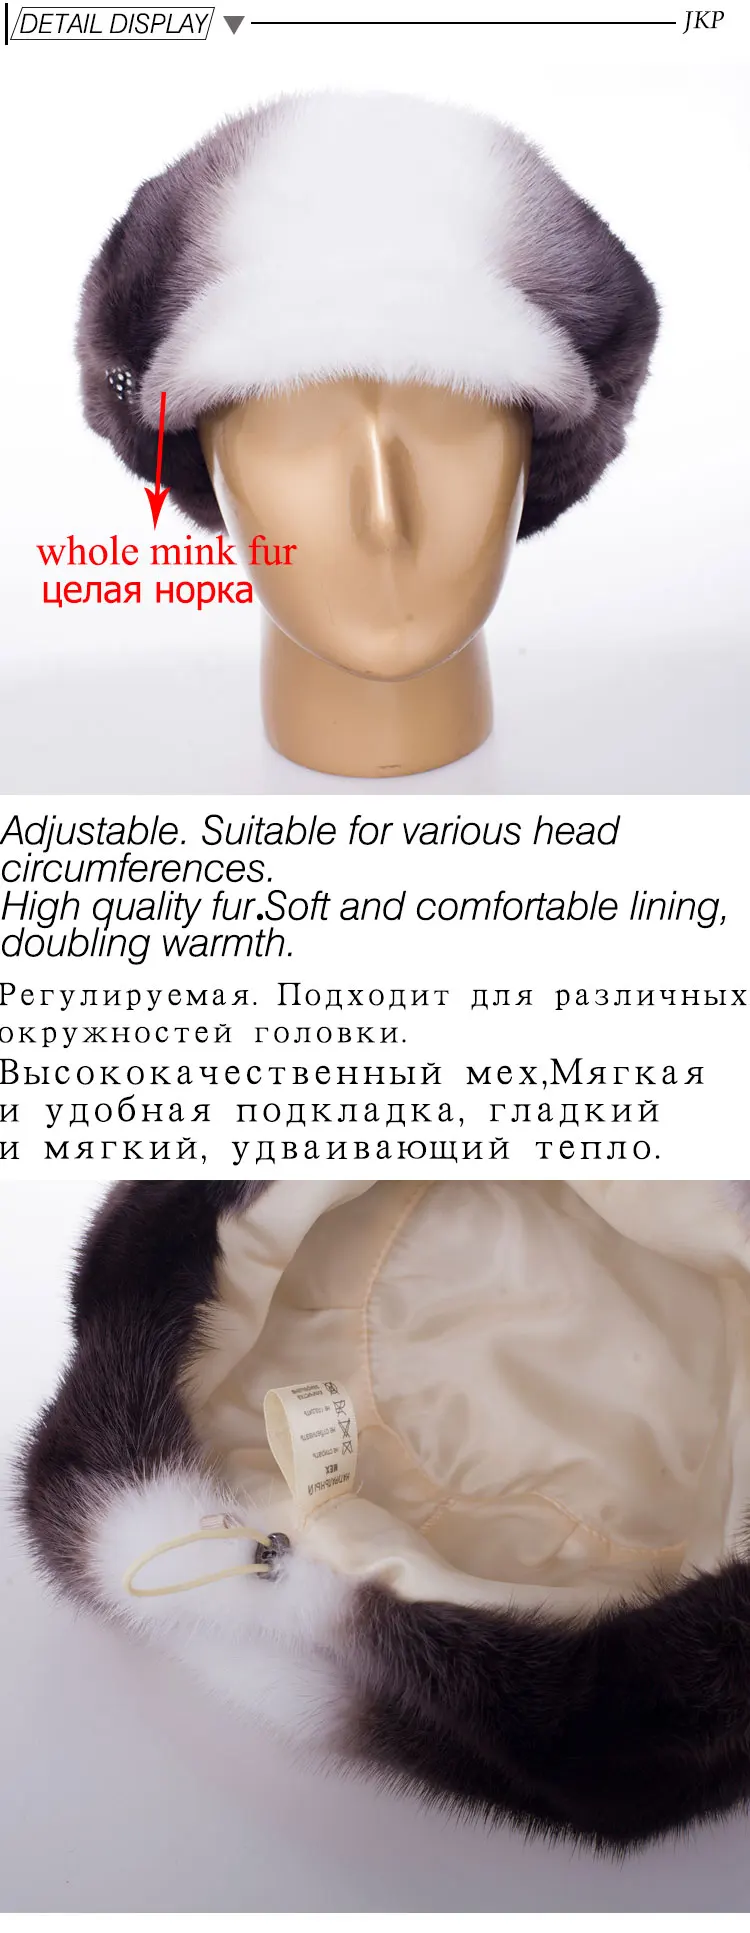 JKP новая полностью из норки женская меховая шапка для сохранения тепла модная черная с белым женская меховая шапка DHY18-19